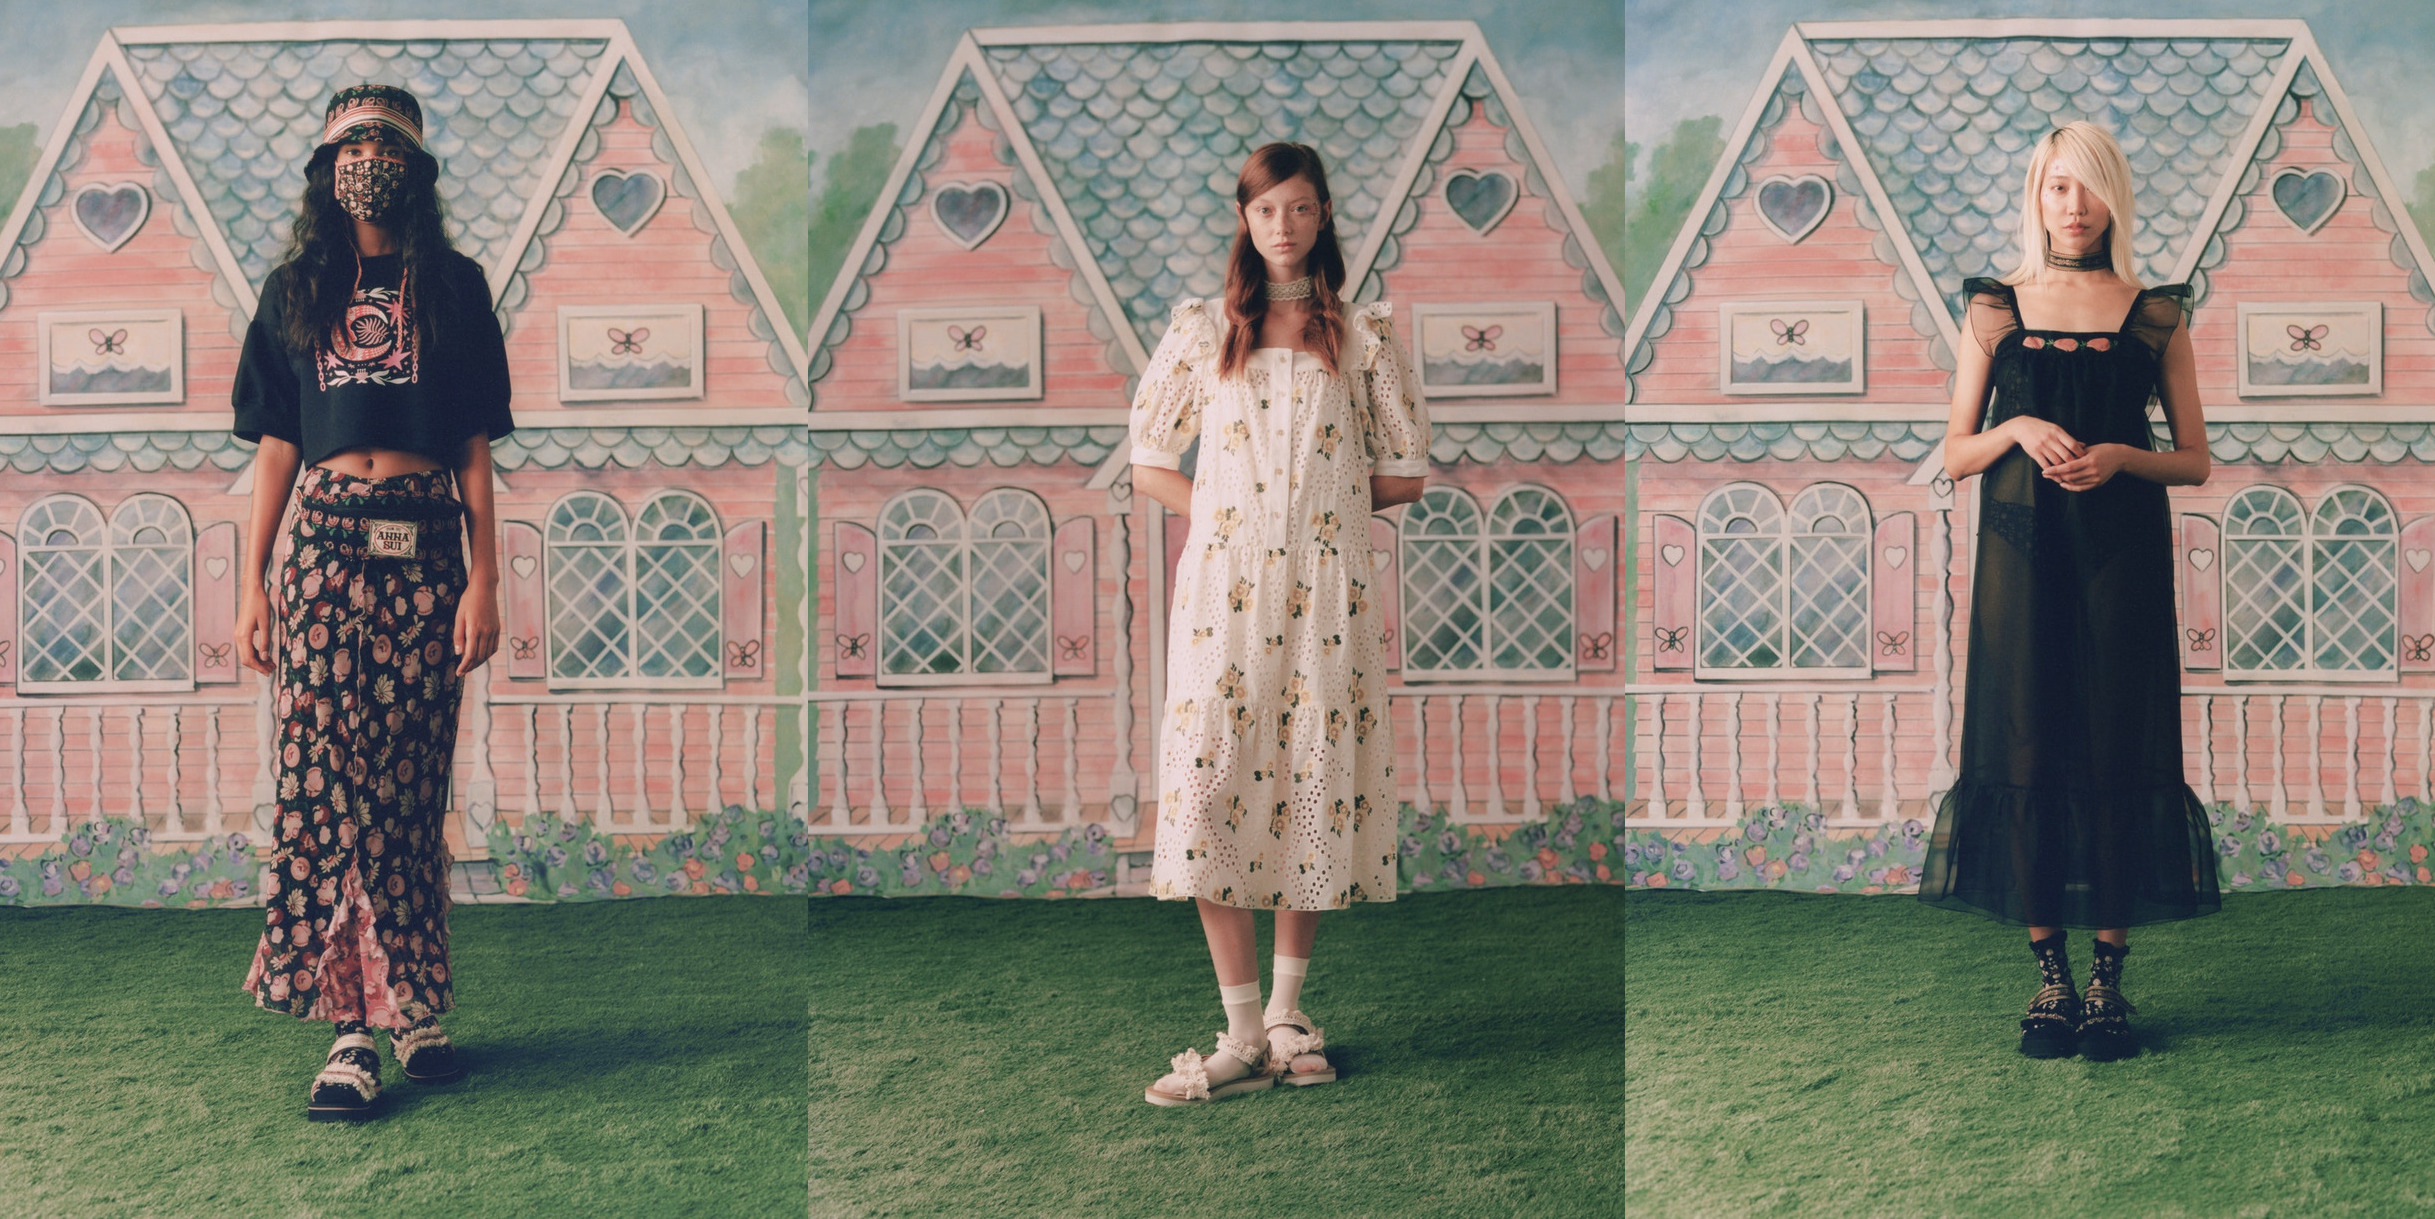 Цветочный принт, кружево и работы импрессионистов — в новой коллекции Anna Sui